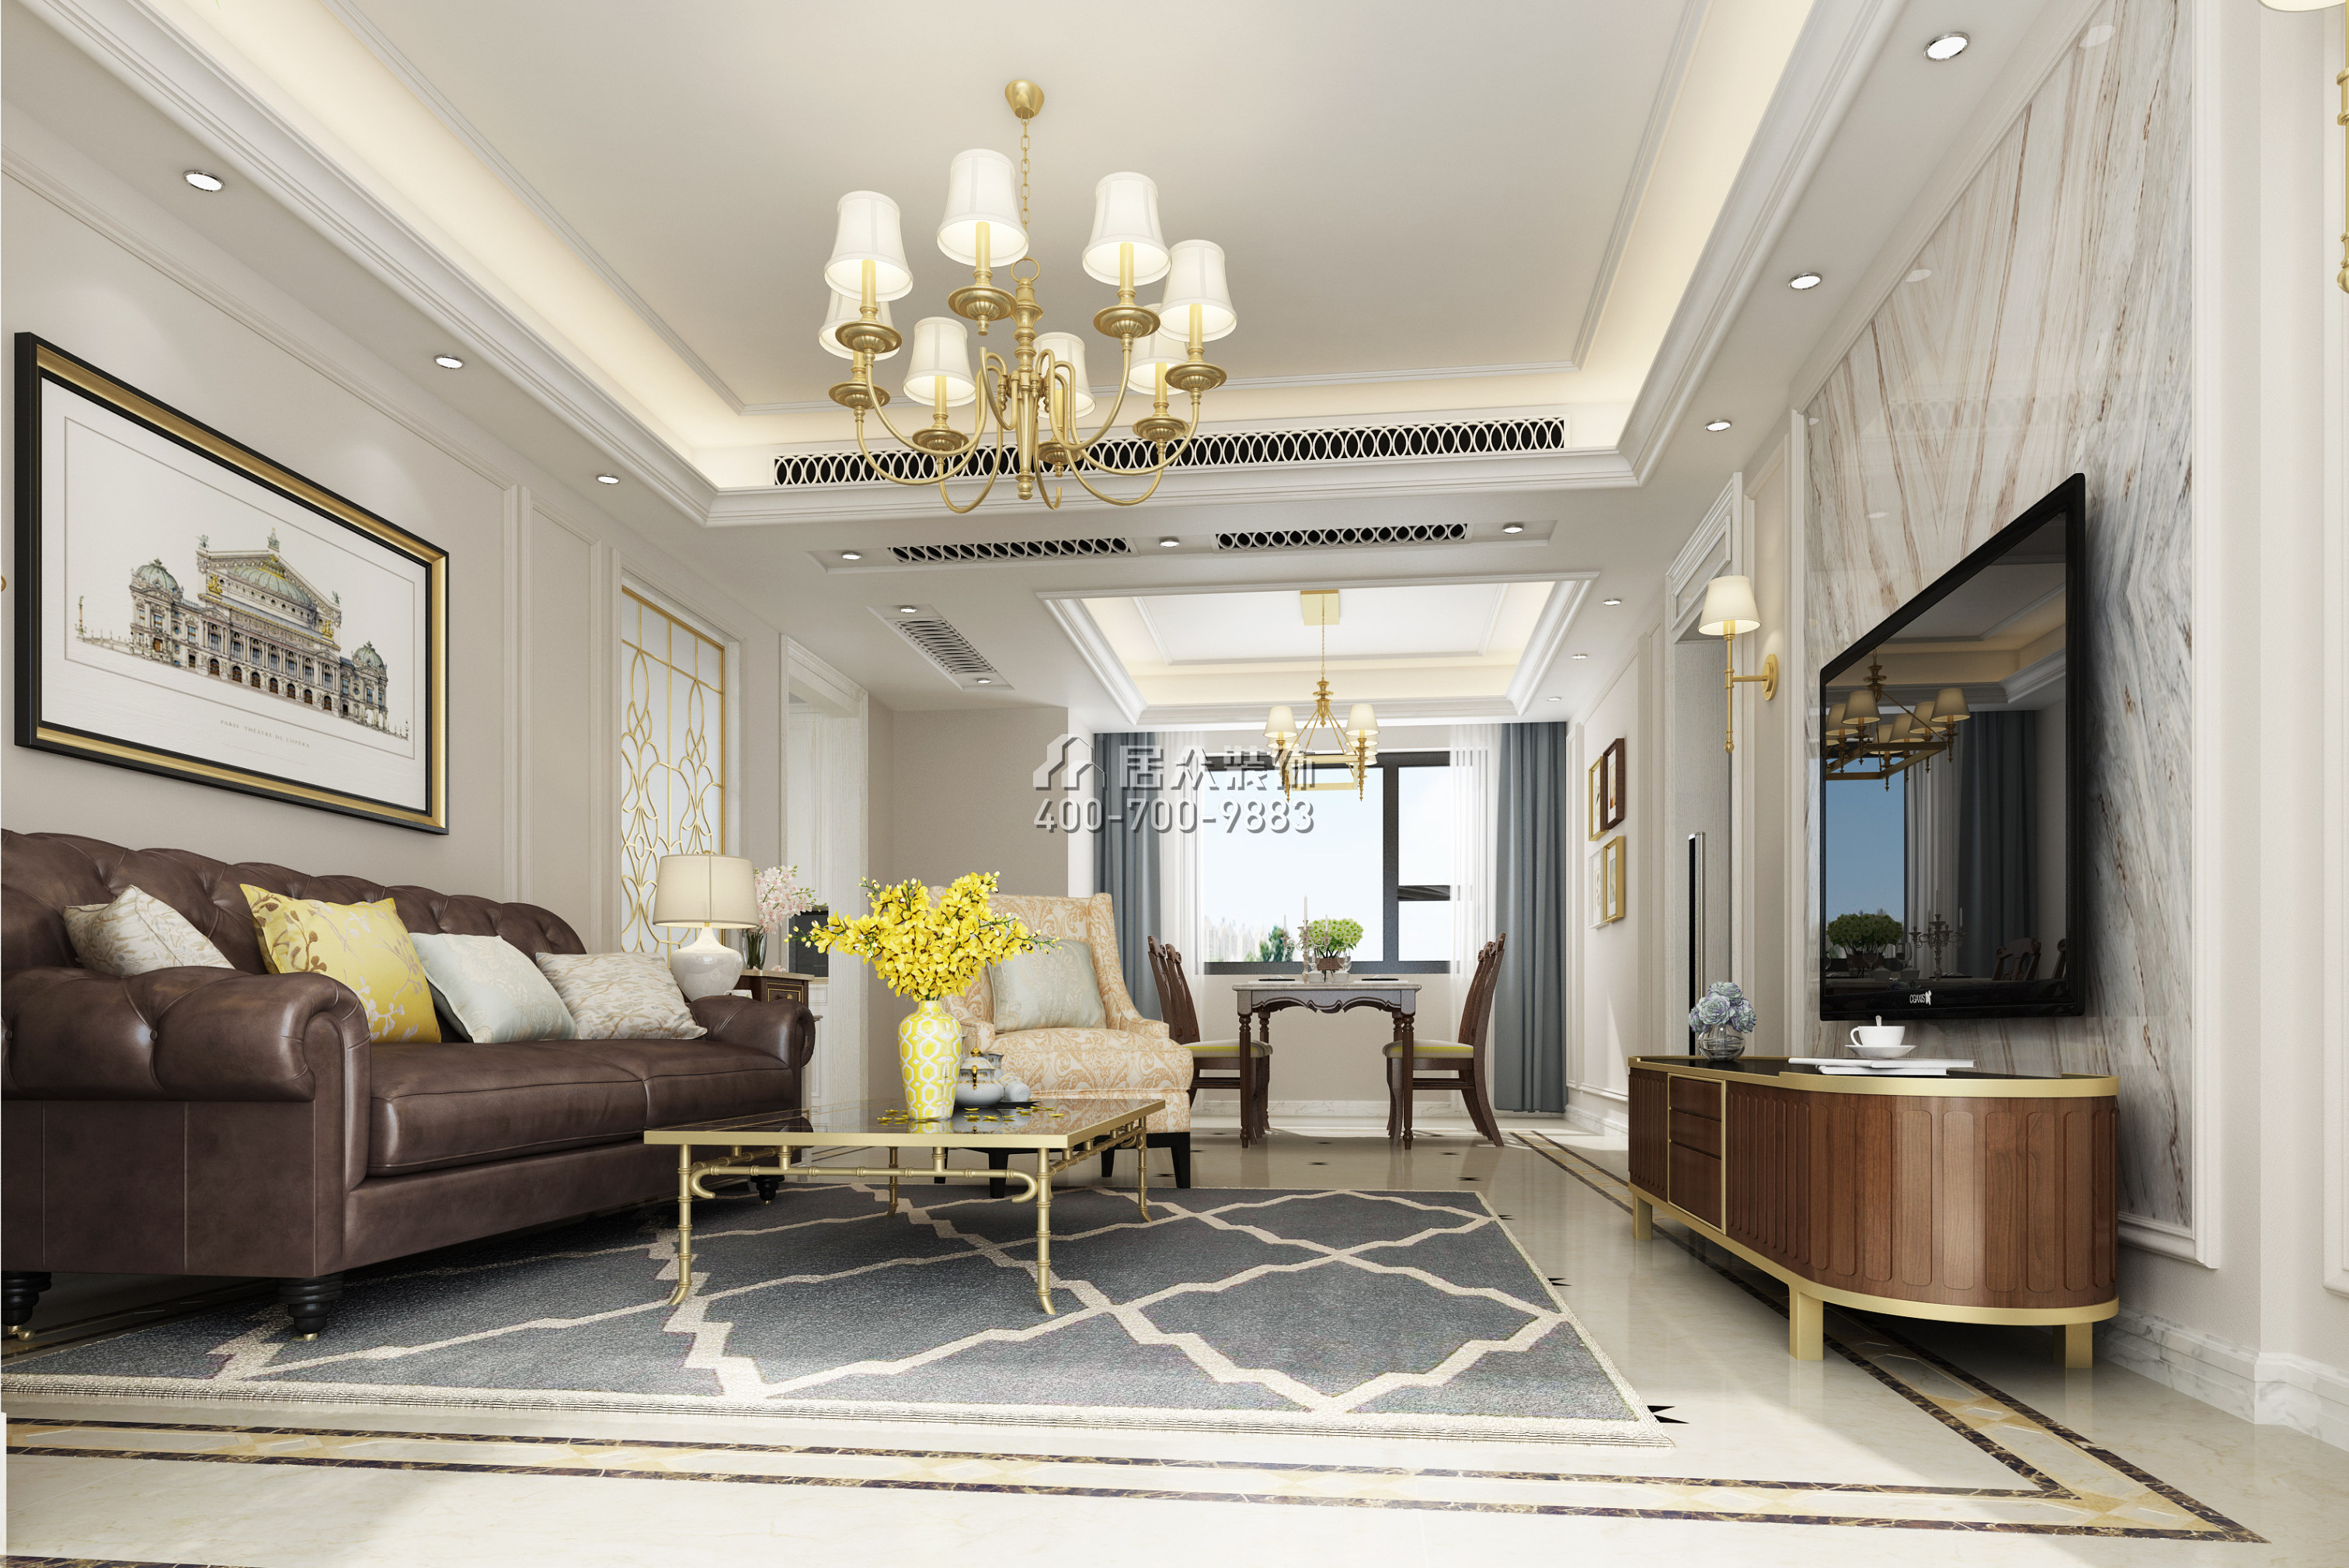 新城新世界130平方米美式风格平层户型客厅装修效果图